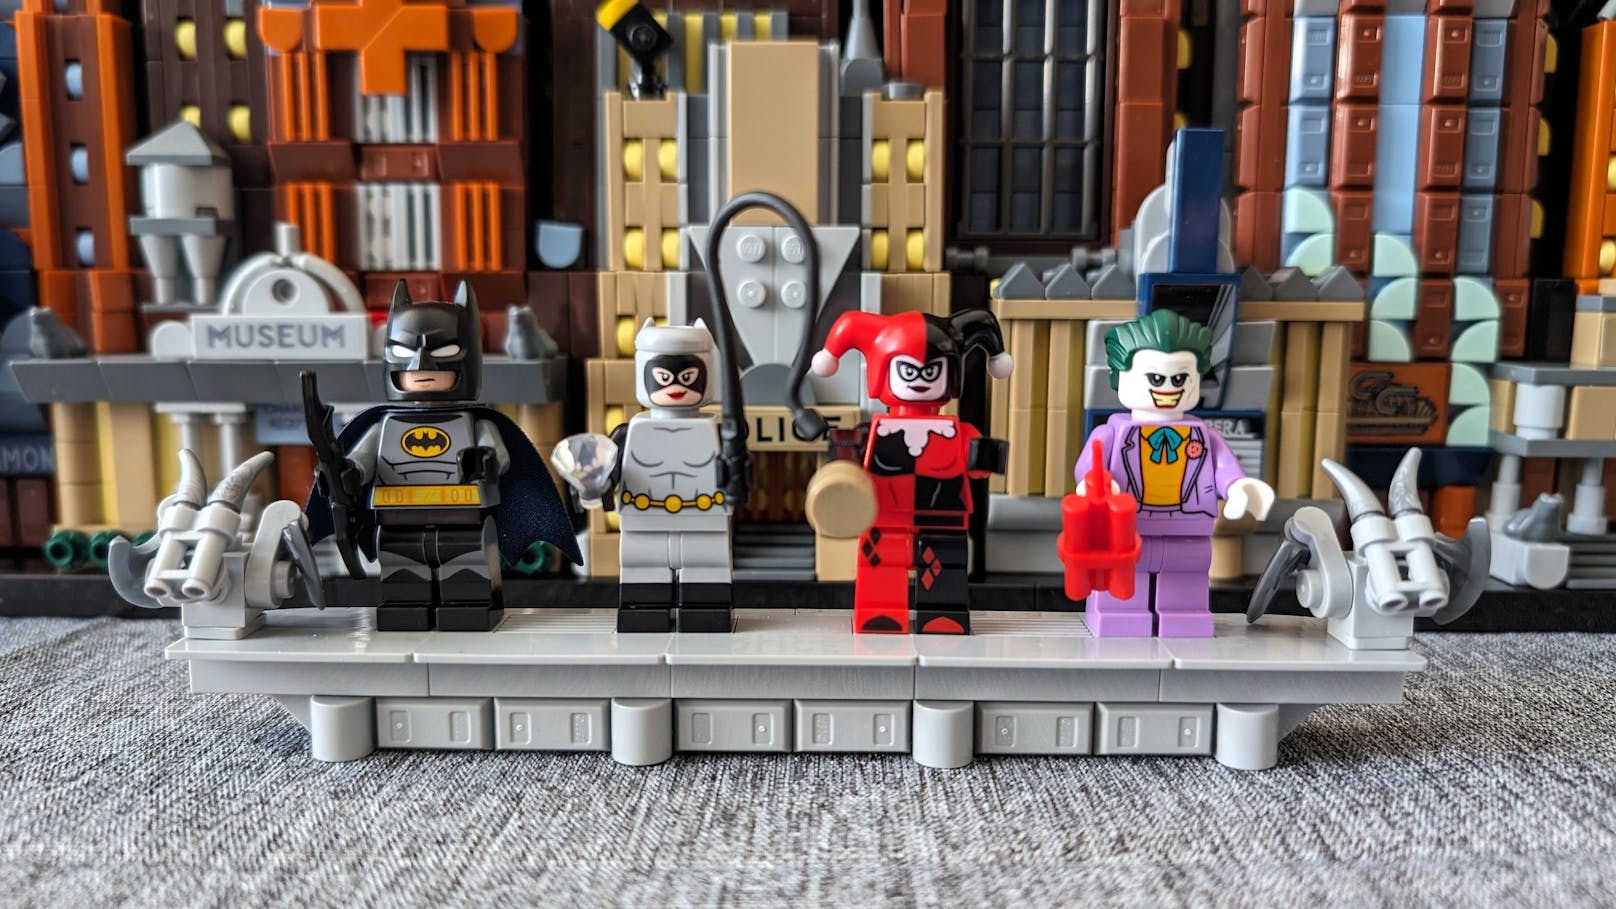 Einen Bonus gibt es noch: Auf der Mini-Galerie werden vier Minifiguren – Batman, Catwoman, Harley Quinn und Joker – ausgestellt.